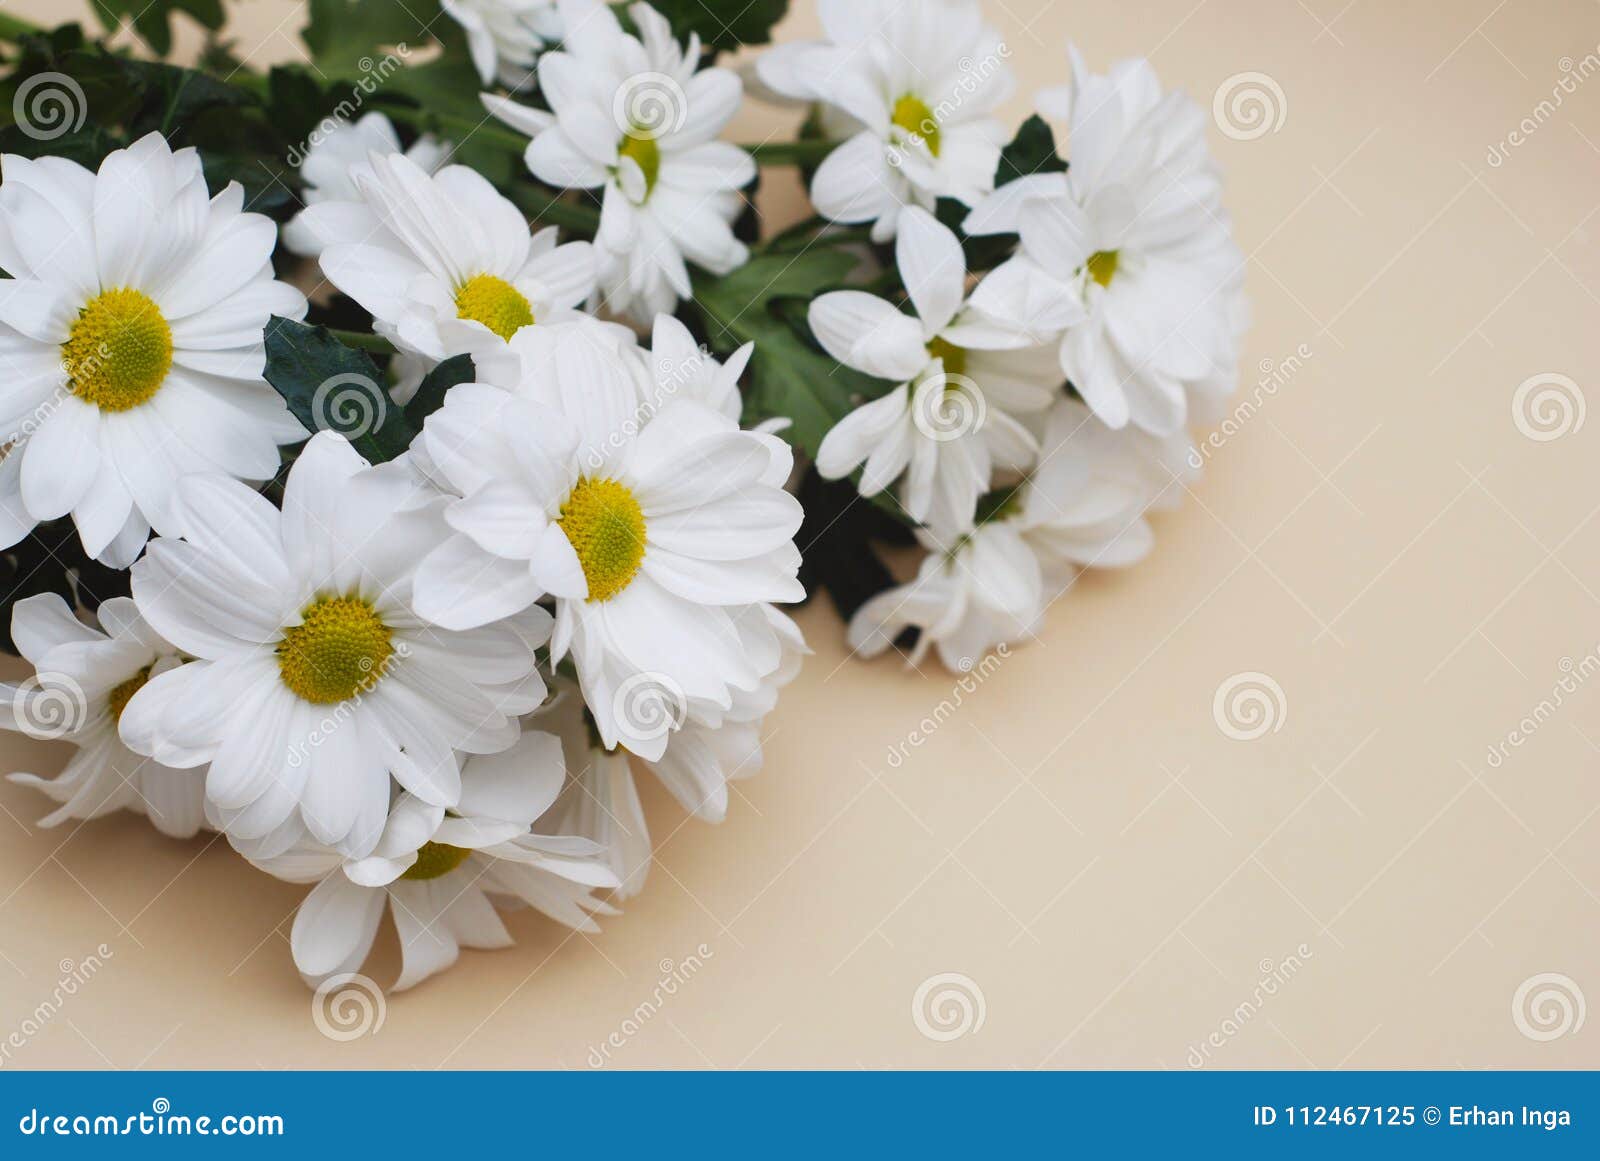 Bouquet De Fleur Blanche De Camomille De Chrysanthème Au-dessus De Fond  Beige Neutre Avec L'espace De Copie Image stock - Image du copie, pétale:  112467125